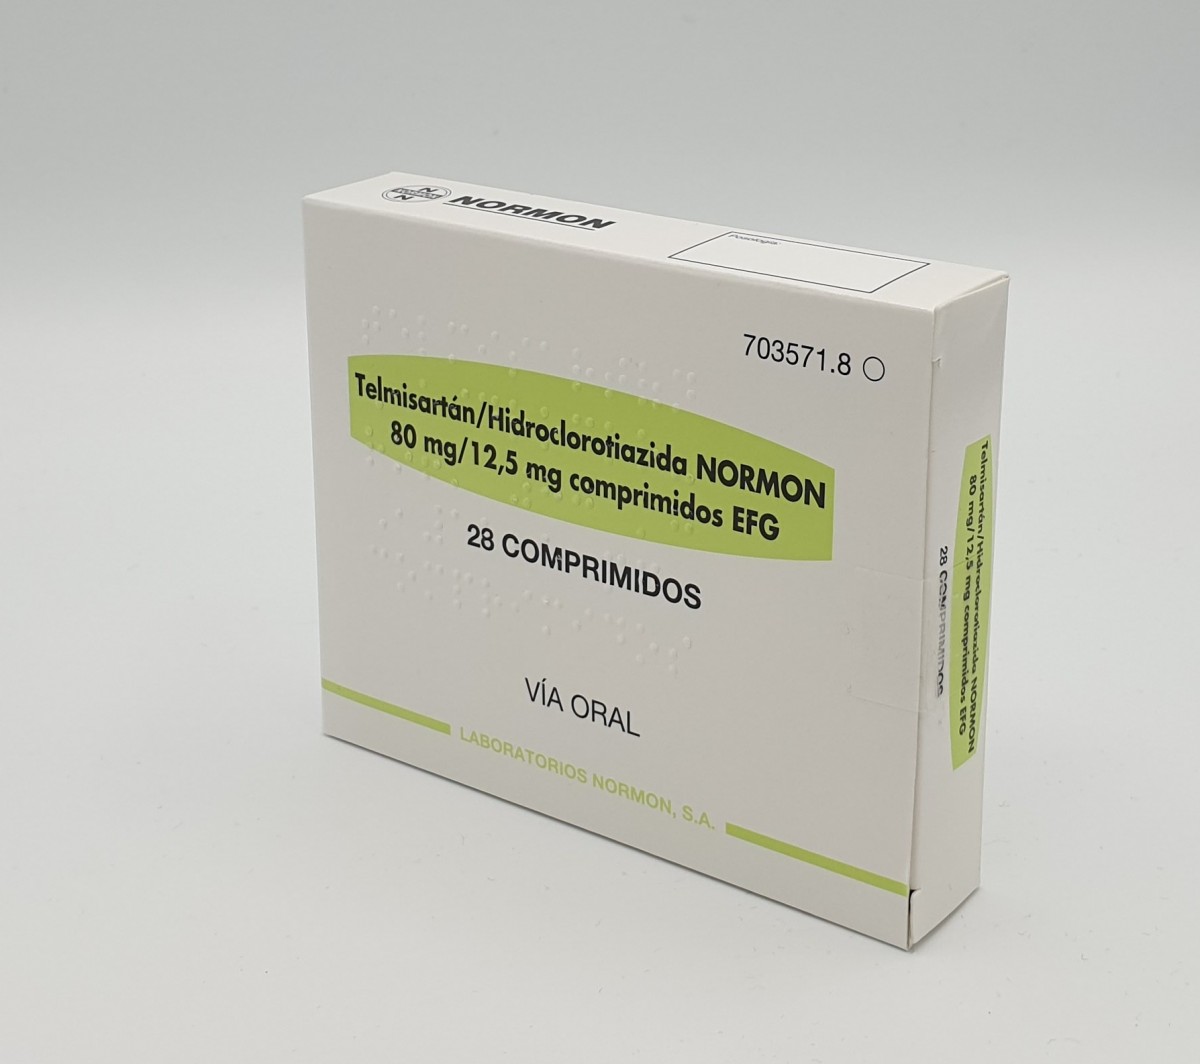 TELMISARTAN/HIDROCLOROTIAZIDA NORMON 80 MG/12,5 MG COMPRIMIDOS EFG , 28 comprimidos fotografía del envase.